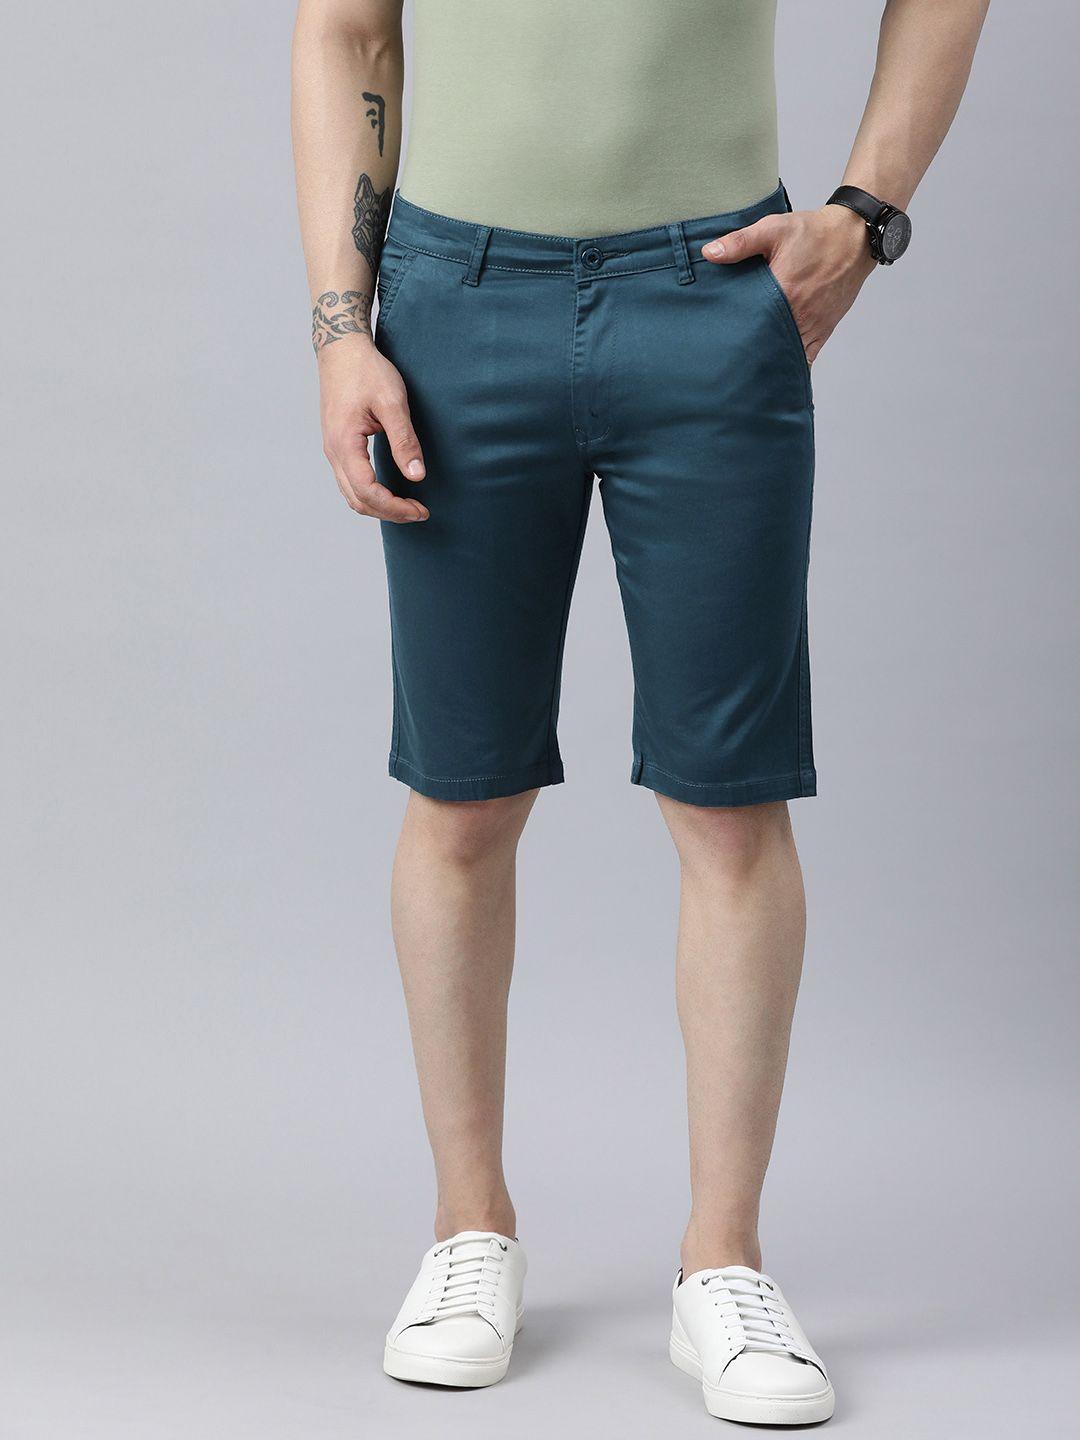 adbucks-men-regular-fit-chino-shorts